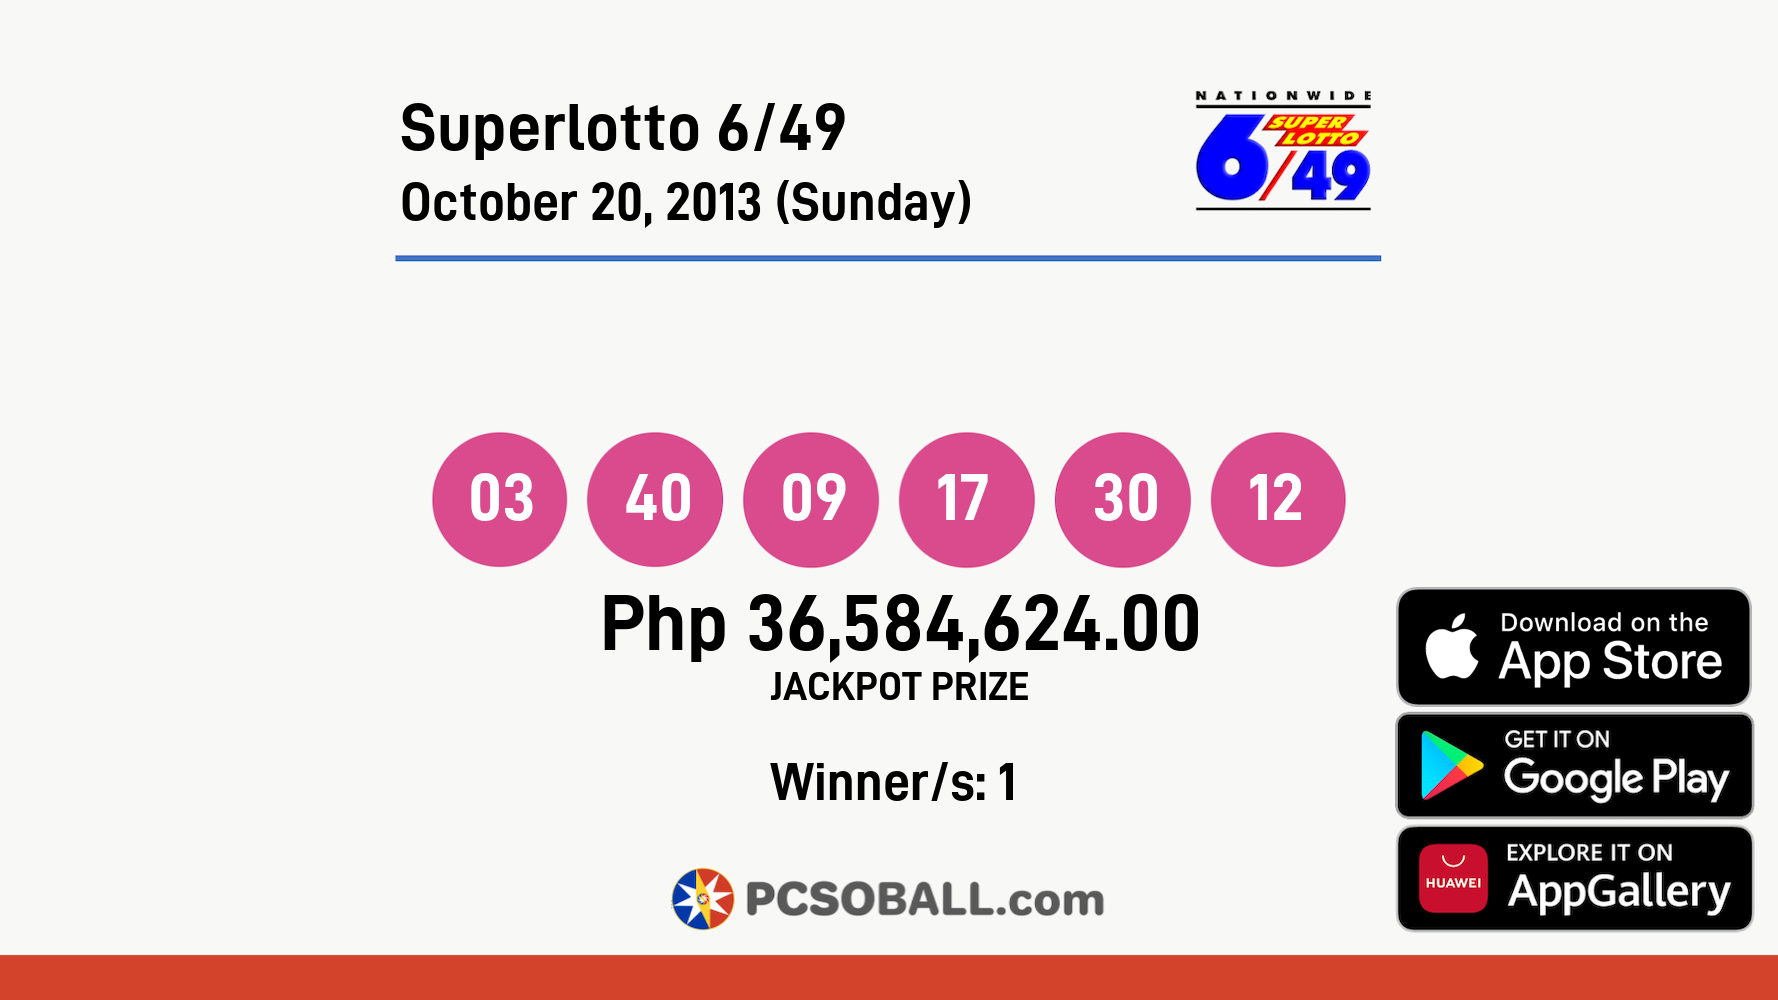 Superlotto 6/49 October 20, 2013 (Sunday) Result